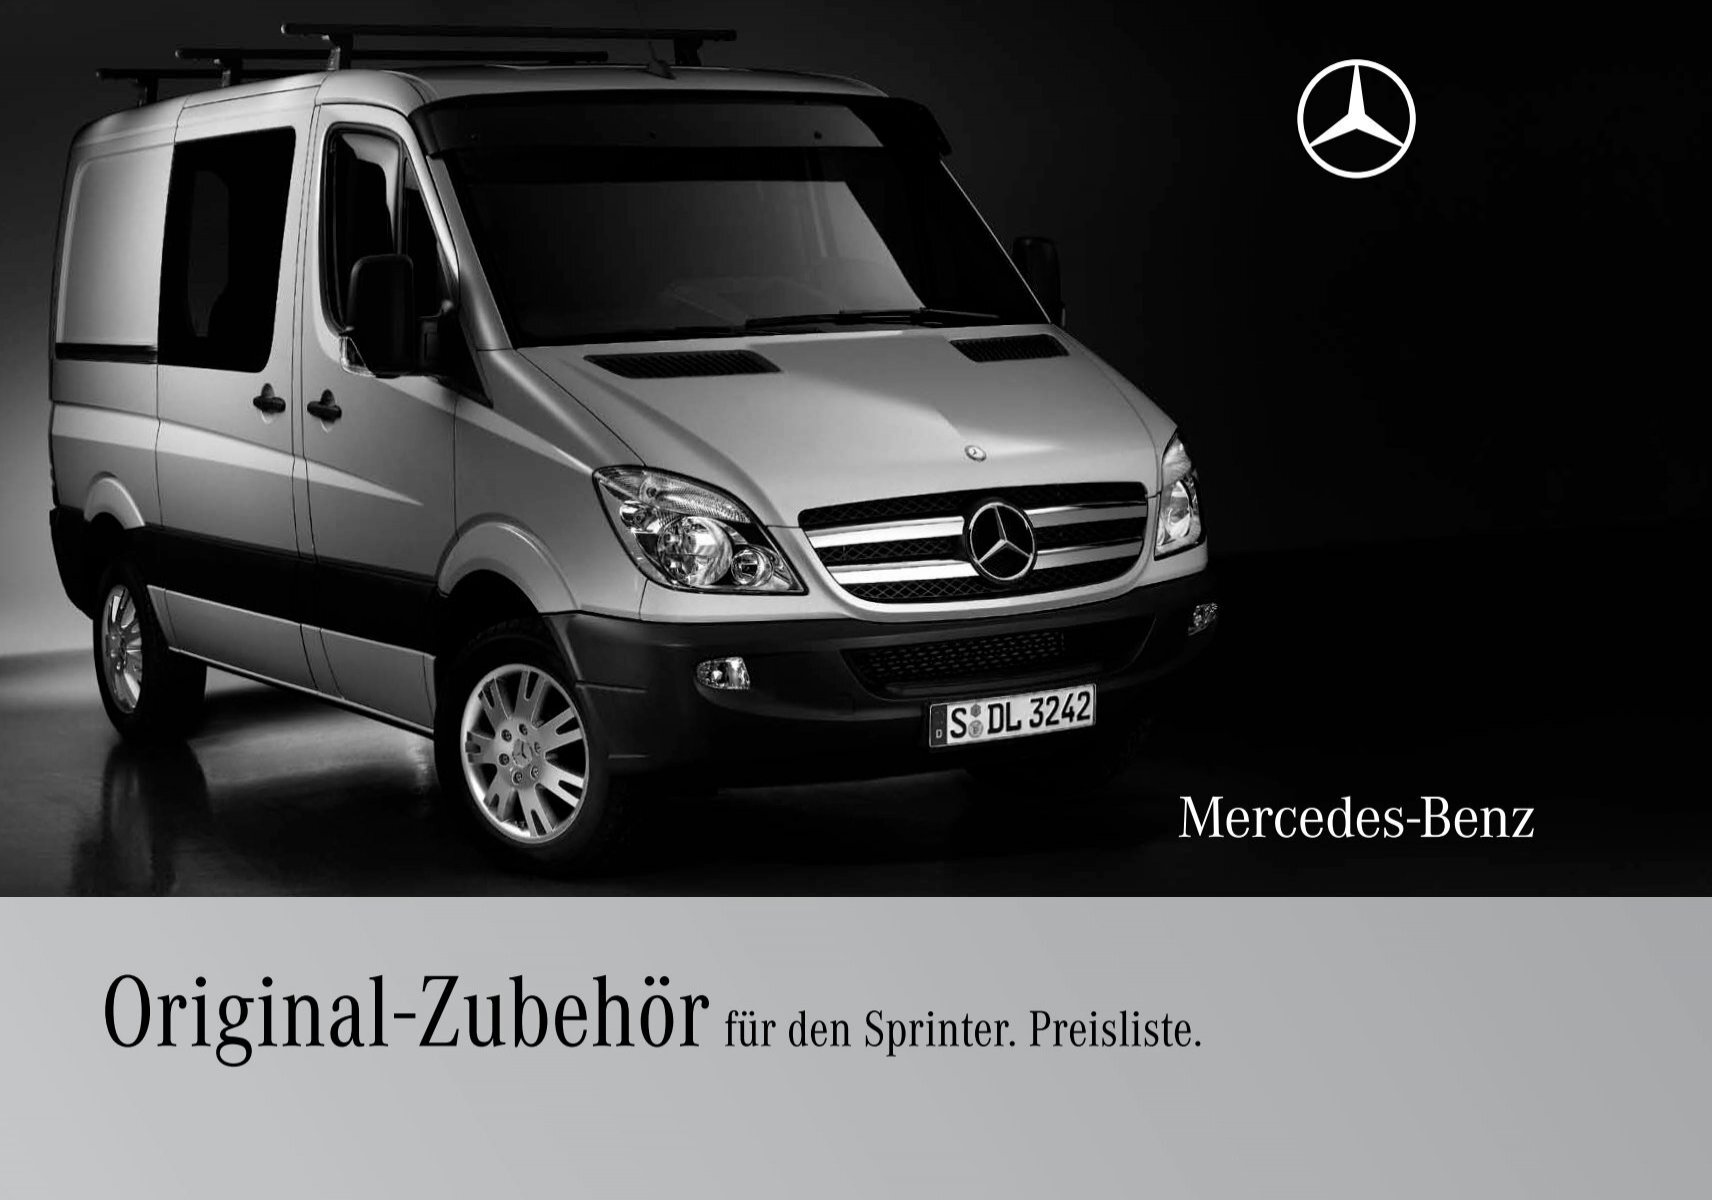 Original-Zubehör für den Sprinter. - Mercedes-Benz Deutschland